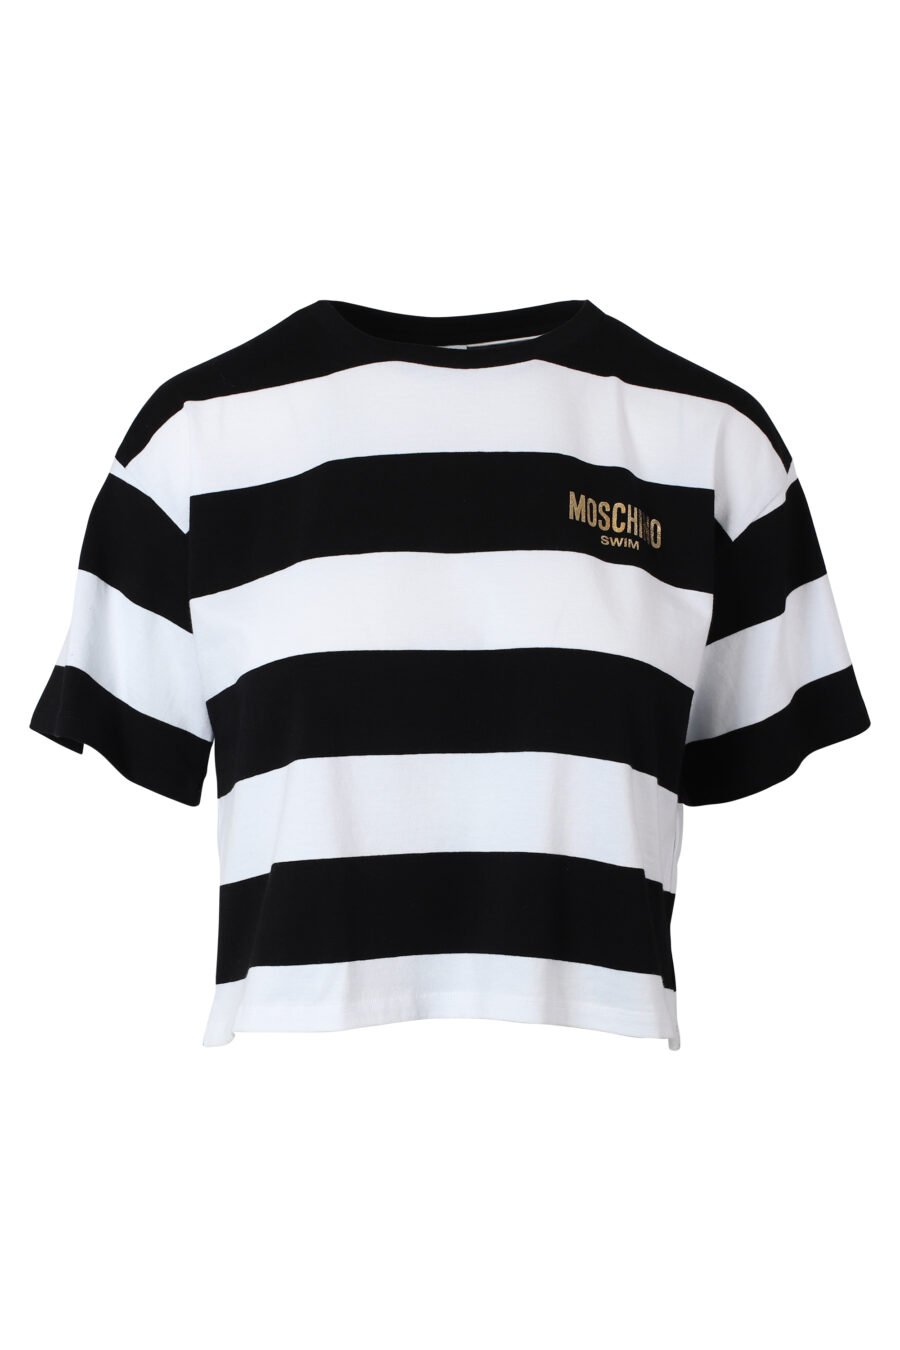 T-shirt bicolor às riscas pretas e brancas com mini-logotipo dourado - IMG 9797